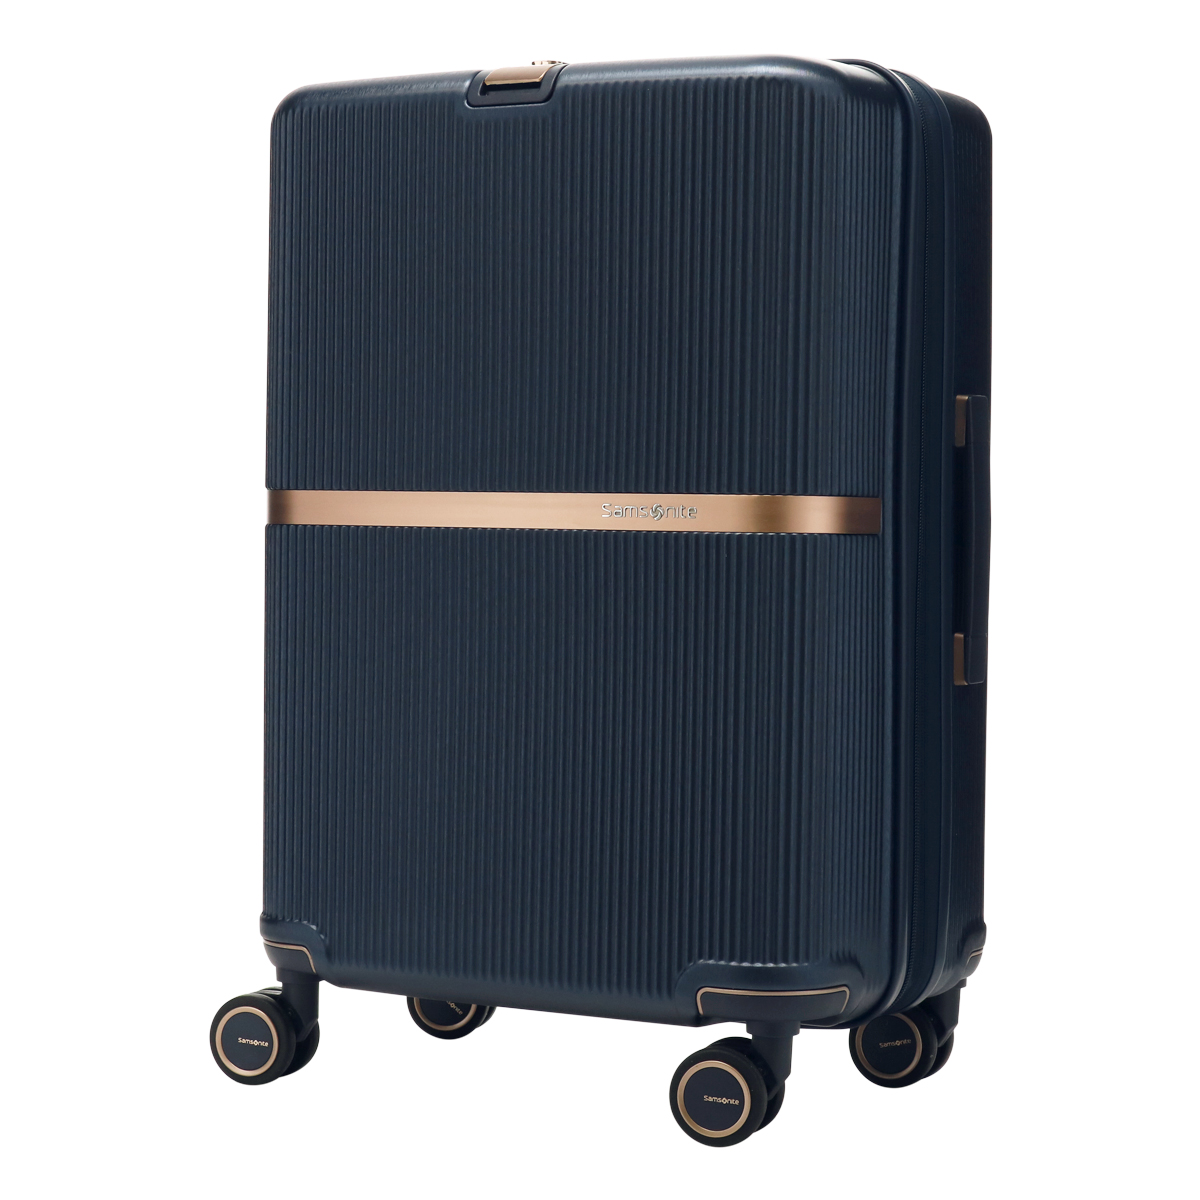 サムソナイト スーツケース 60L 61cm 3.8kg ミンター スピナー61 